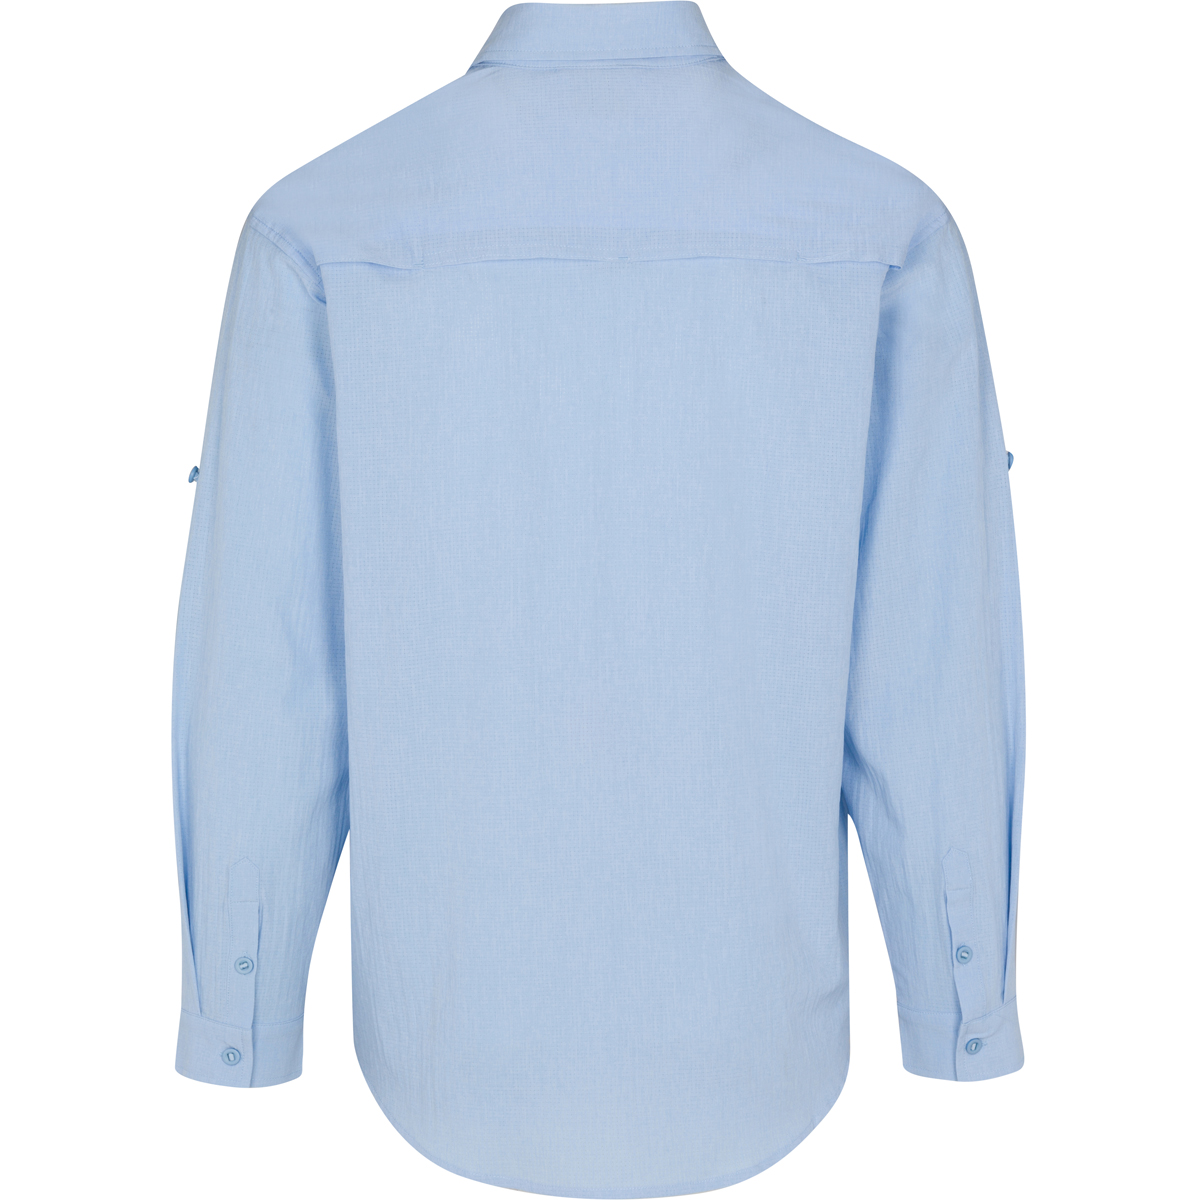 Men's Bimini Long Sleeve Fishing Shirt - Blue - Rising Tide Style